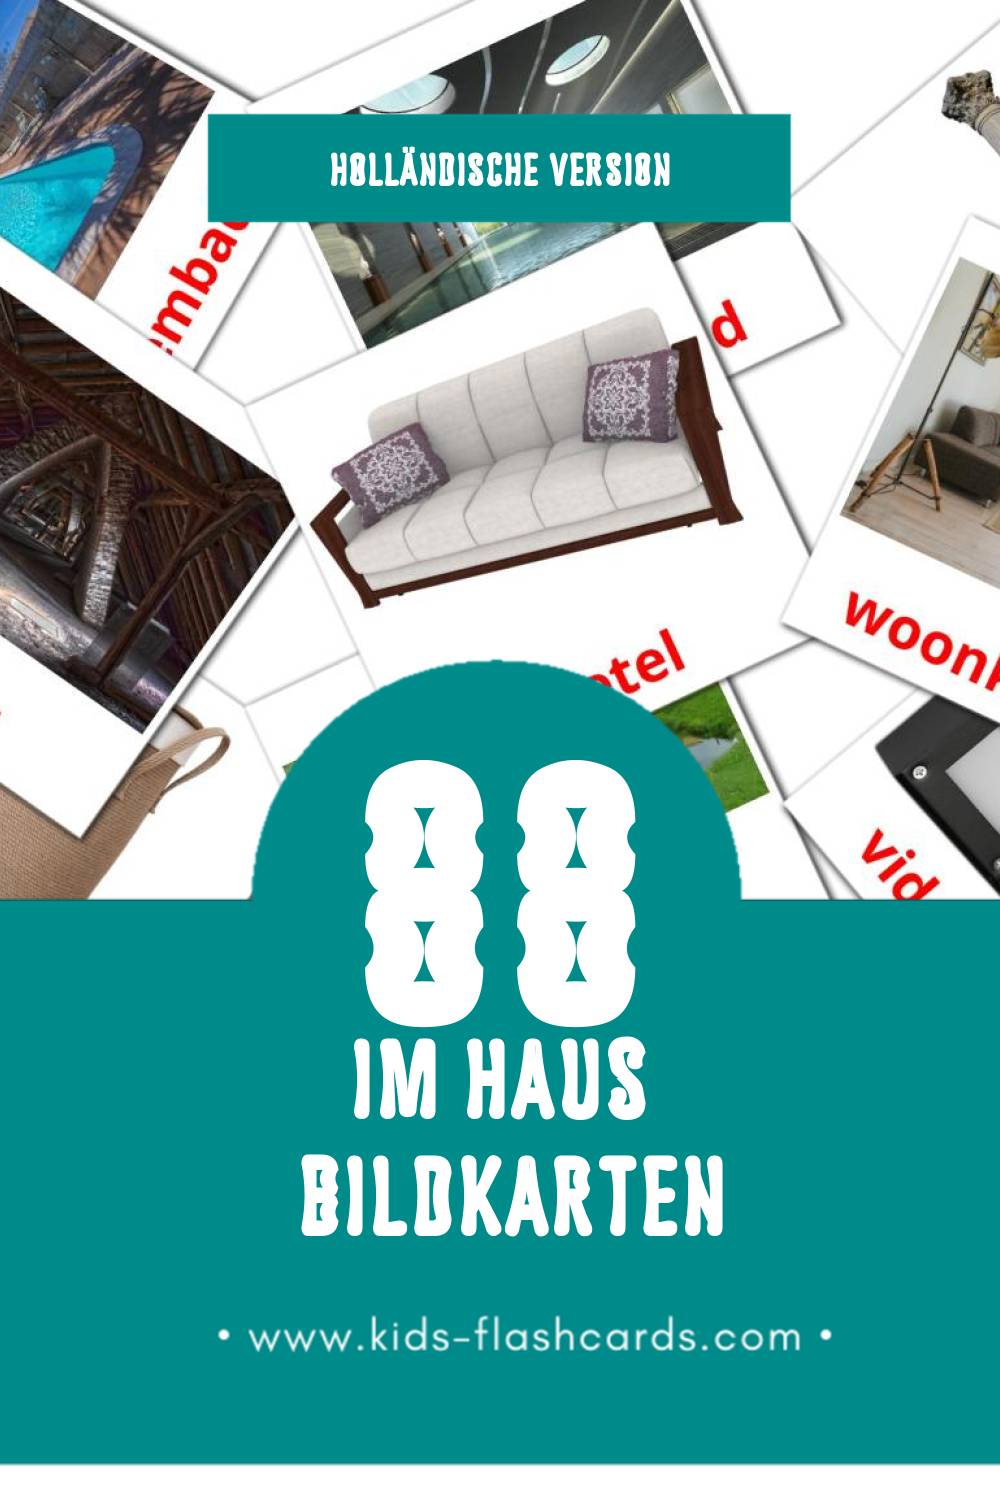 Visual Huis Flashcards für Kleinkinder (91 Karten in Holländisch)